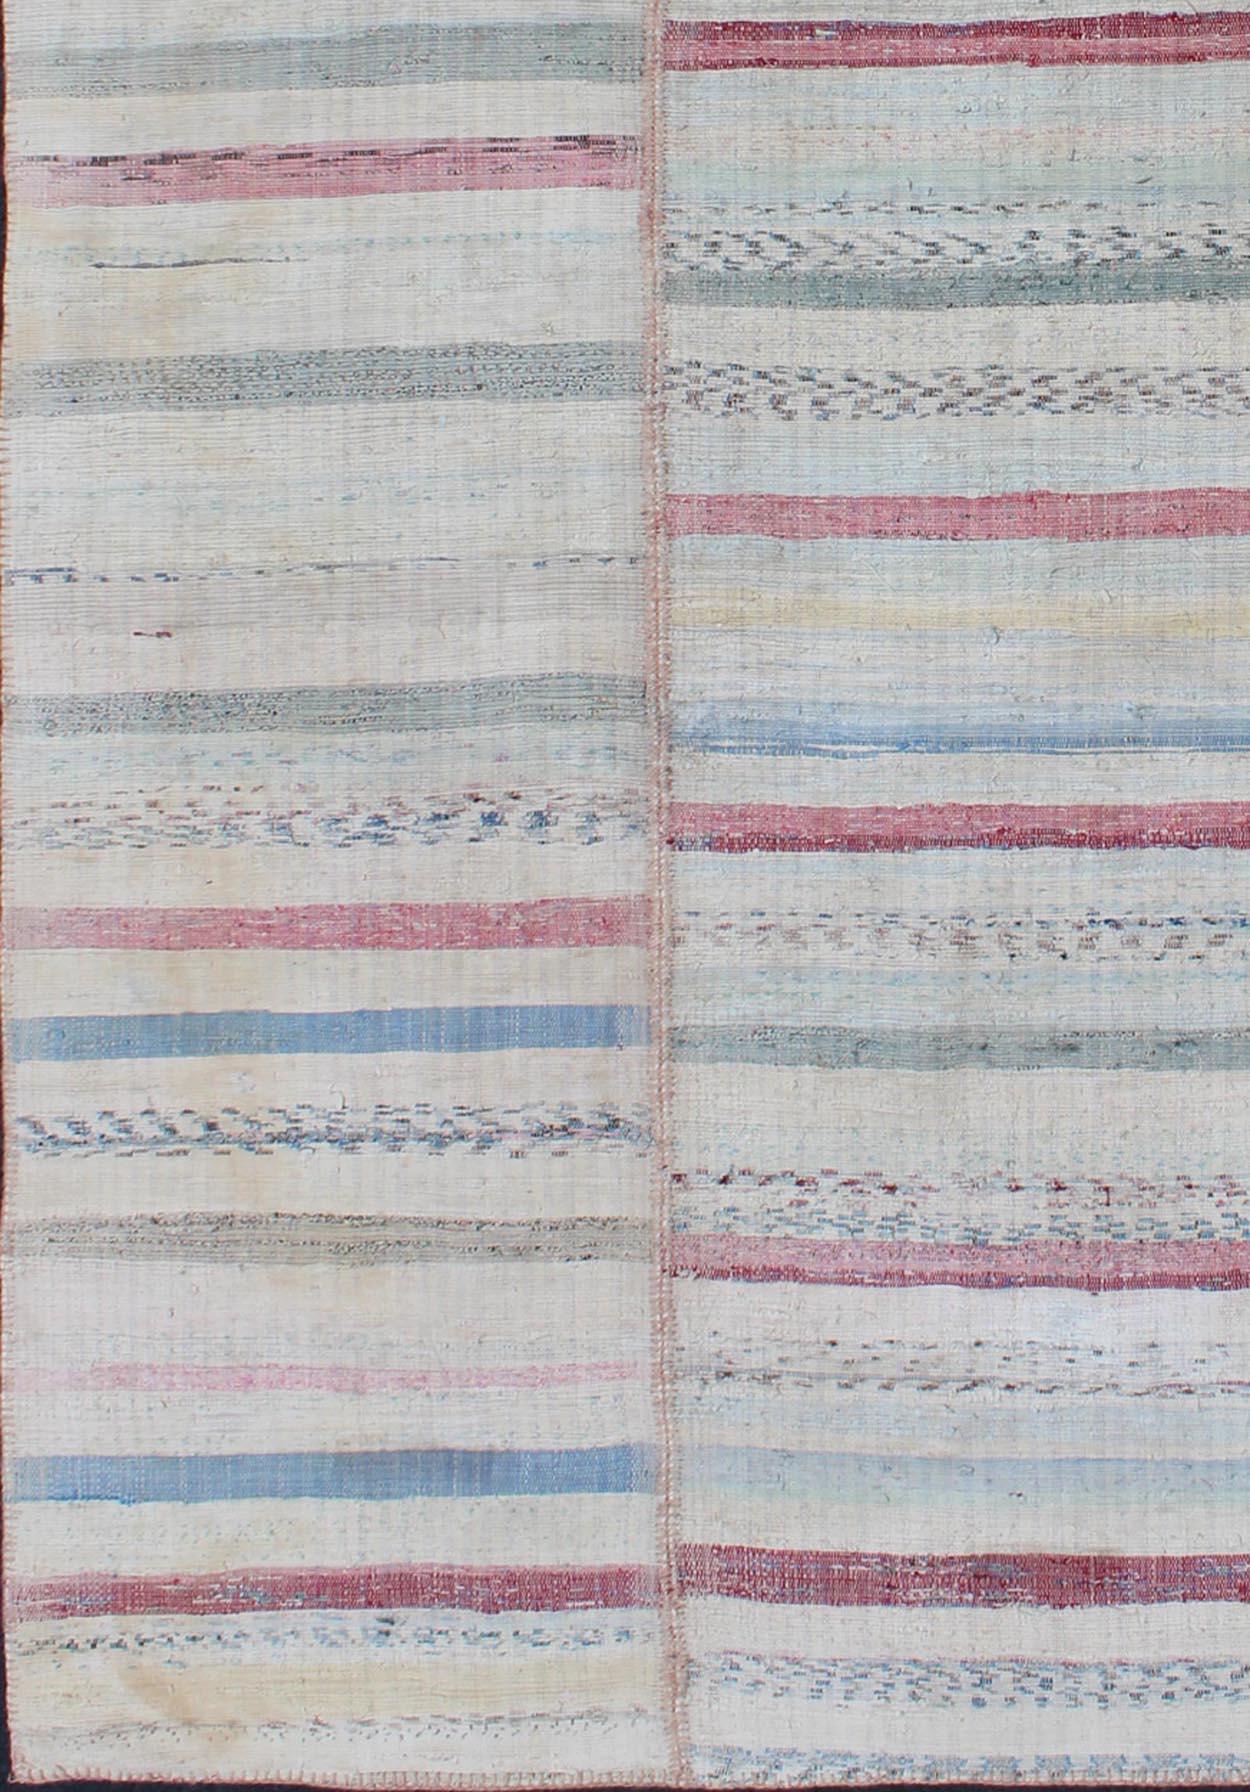 Türkischer Flachgewebe-Teppich im Vintage-Stil in Rosa, Blau, Grün und Creme mit mehreren Bahnen

Dieser mehrteilige, gestreifte Kelim ist ein Beispiel für den provinziellen Minimalismus, der sich einem moderneren Design angepasst hat. Einzelne